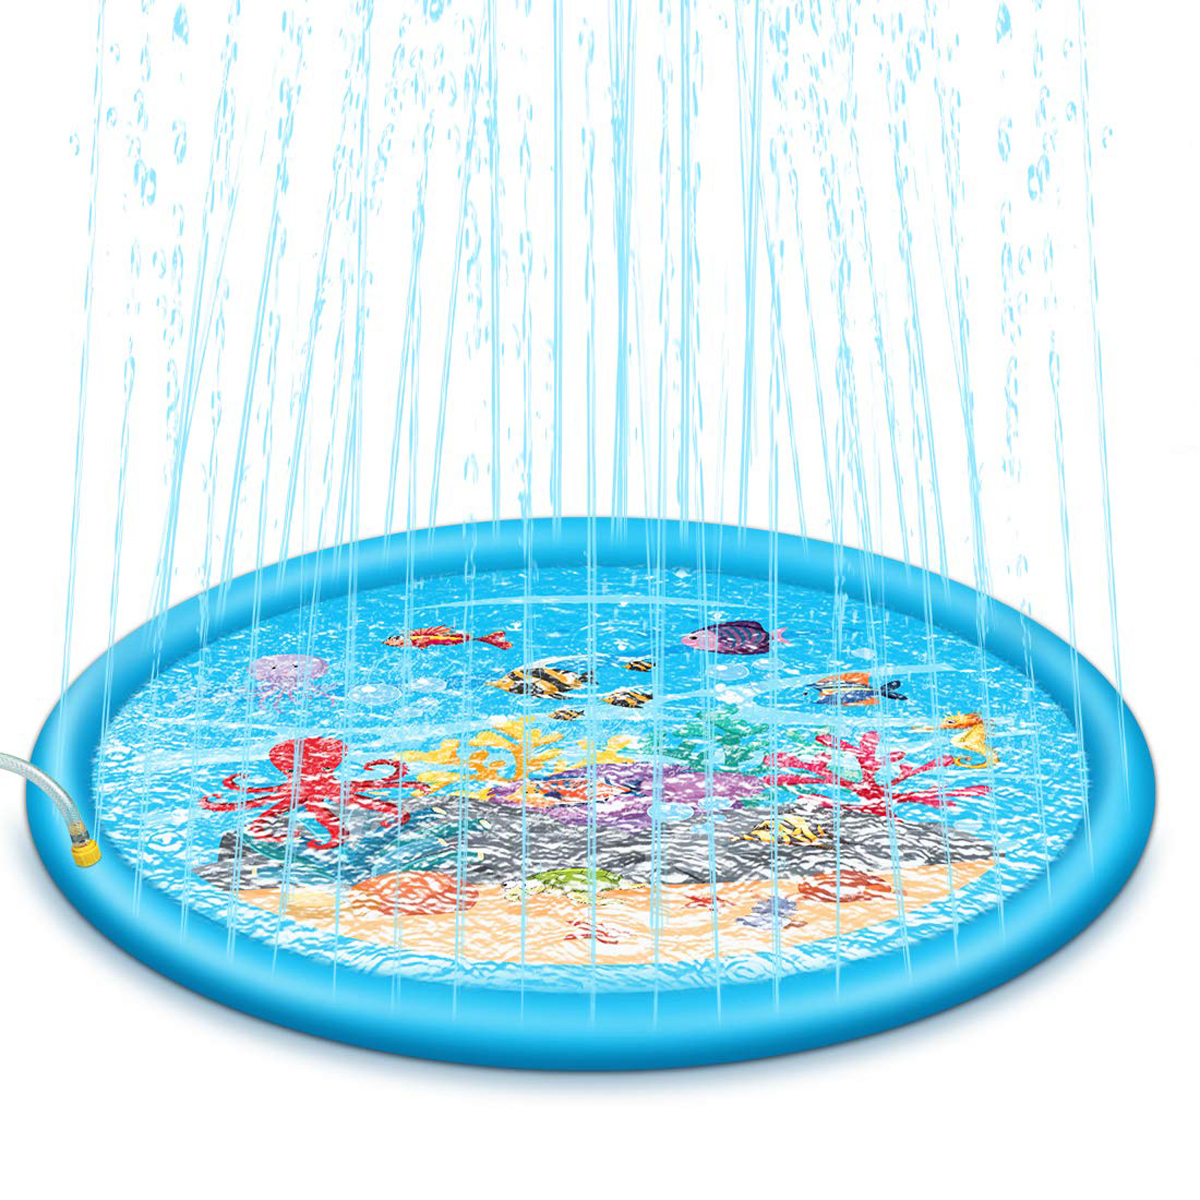 

68 "Sprinkle Splash Play Mat Надувной Плавательный Бассейн Water Fun Toys Pad Летняя вечеринка на заднем дворе